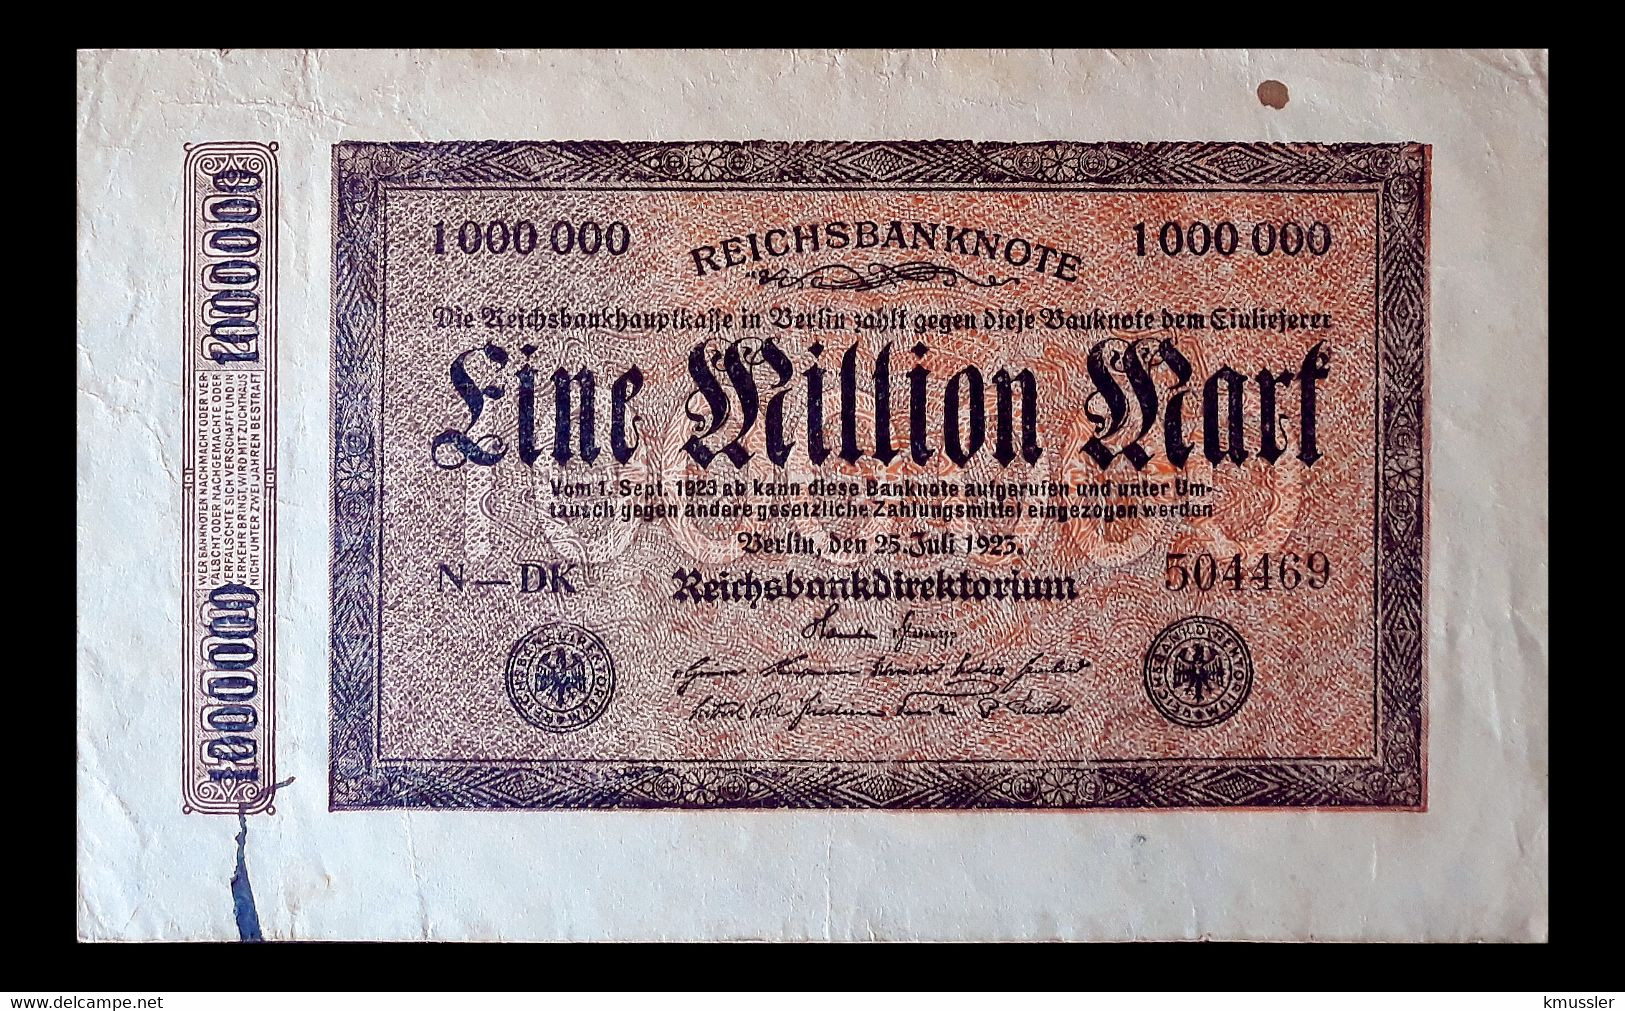 # # # Banknote Germany (Dt. Reich) 1 Mio Mark 1922 # # # - 1 Miljoen Mark